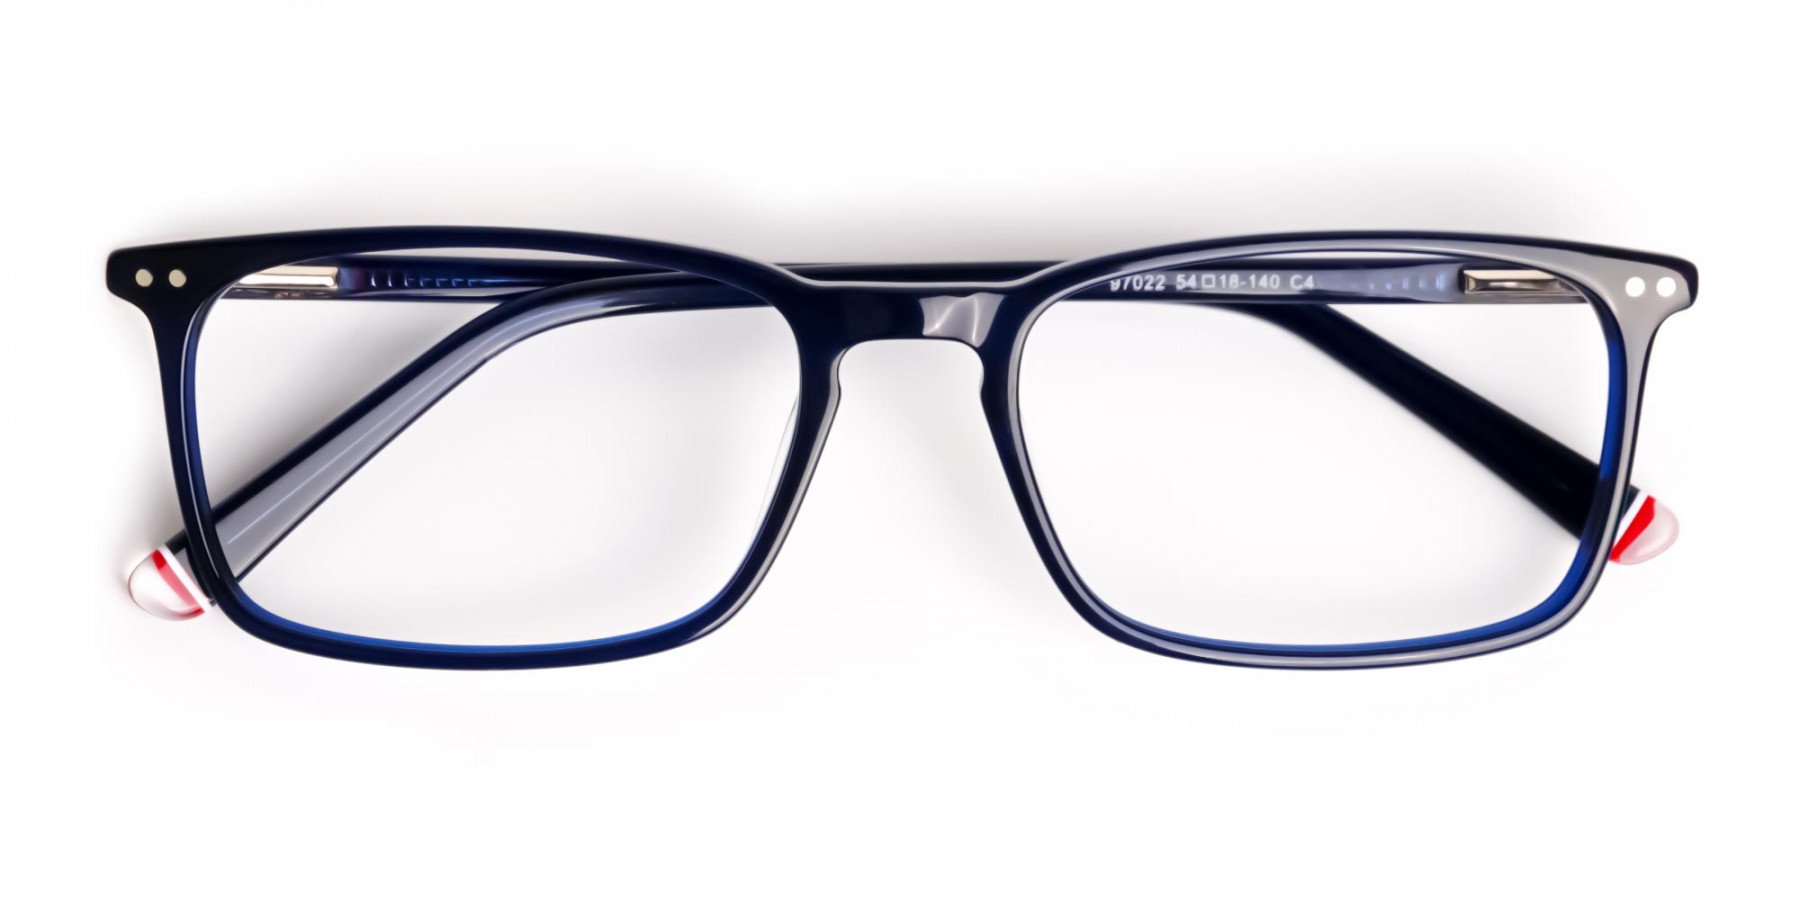 blue-glasses-in-rectangular-shape-frames-1